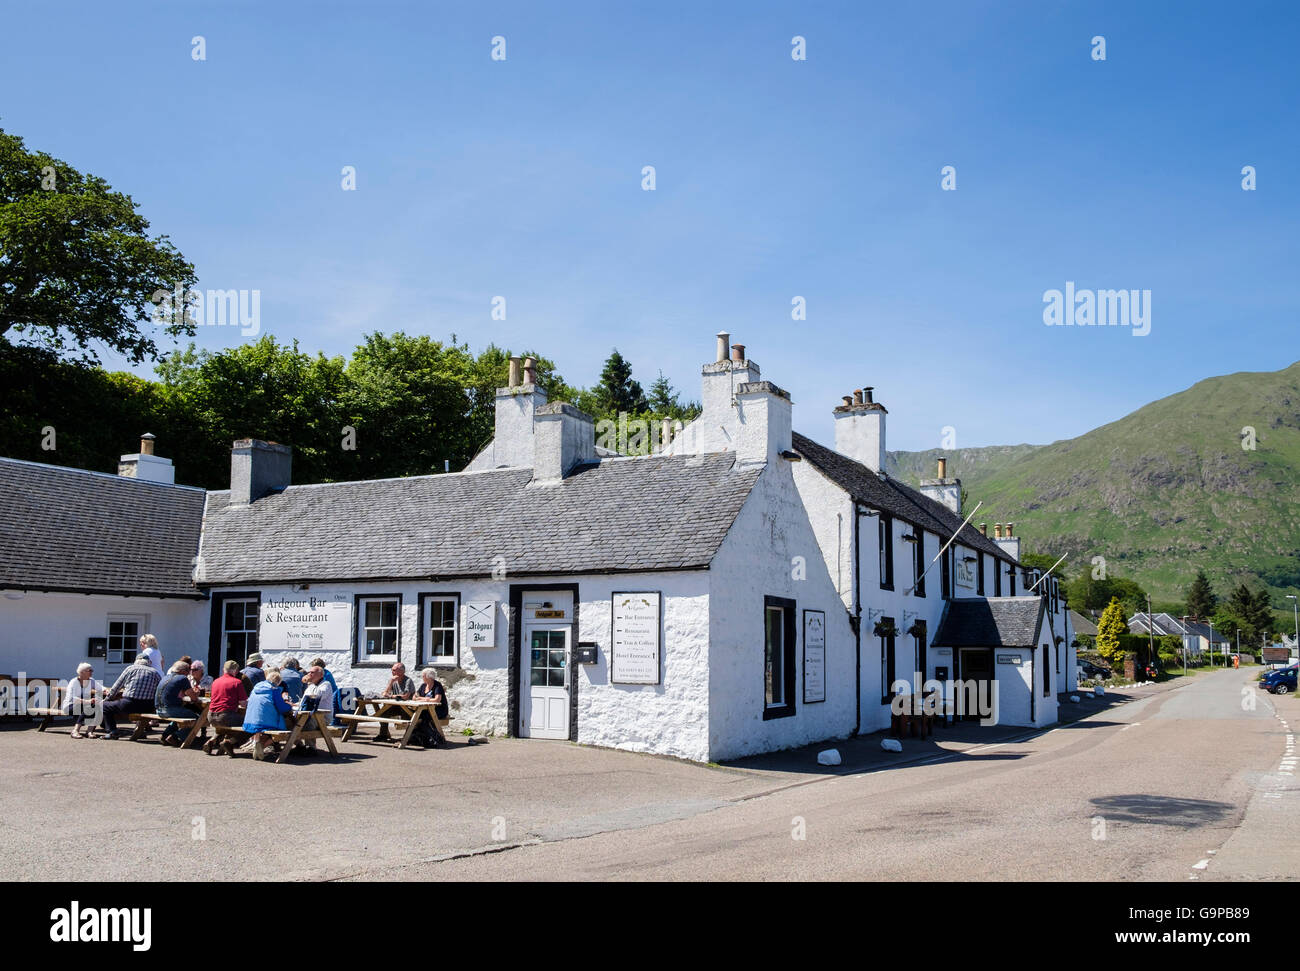 The Inn at Ardgour è un tradizionale pub di campagna e hotel in estate. Corran Fort William Inverness-shire Highland Scozia UK Gran Bretagna Foto Stock